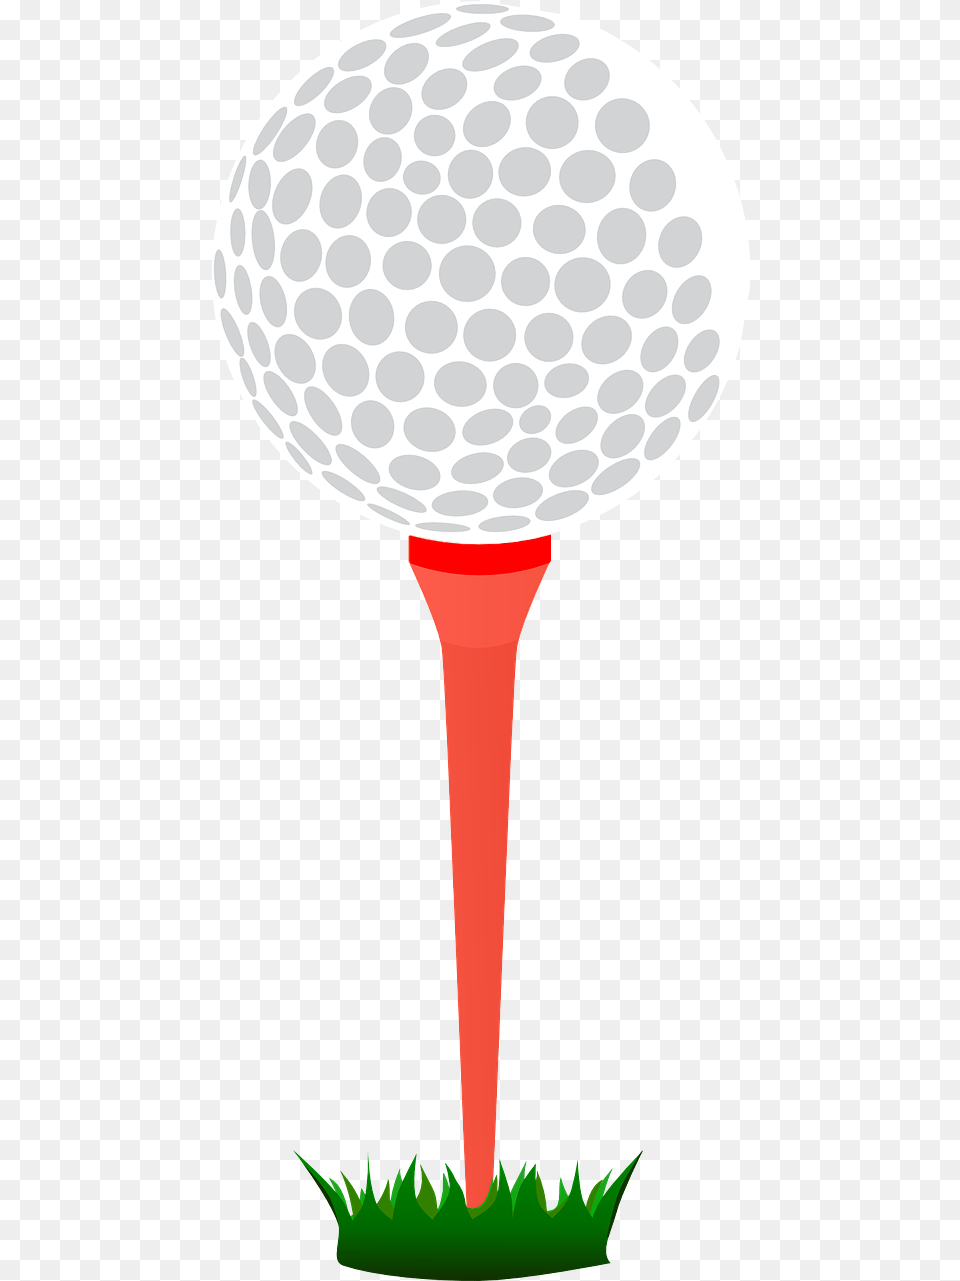 Golf Tee Clipart, Ball, Golf Ball, Sport Png